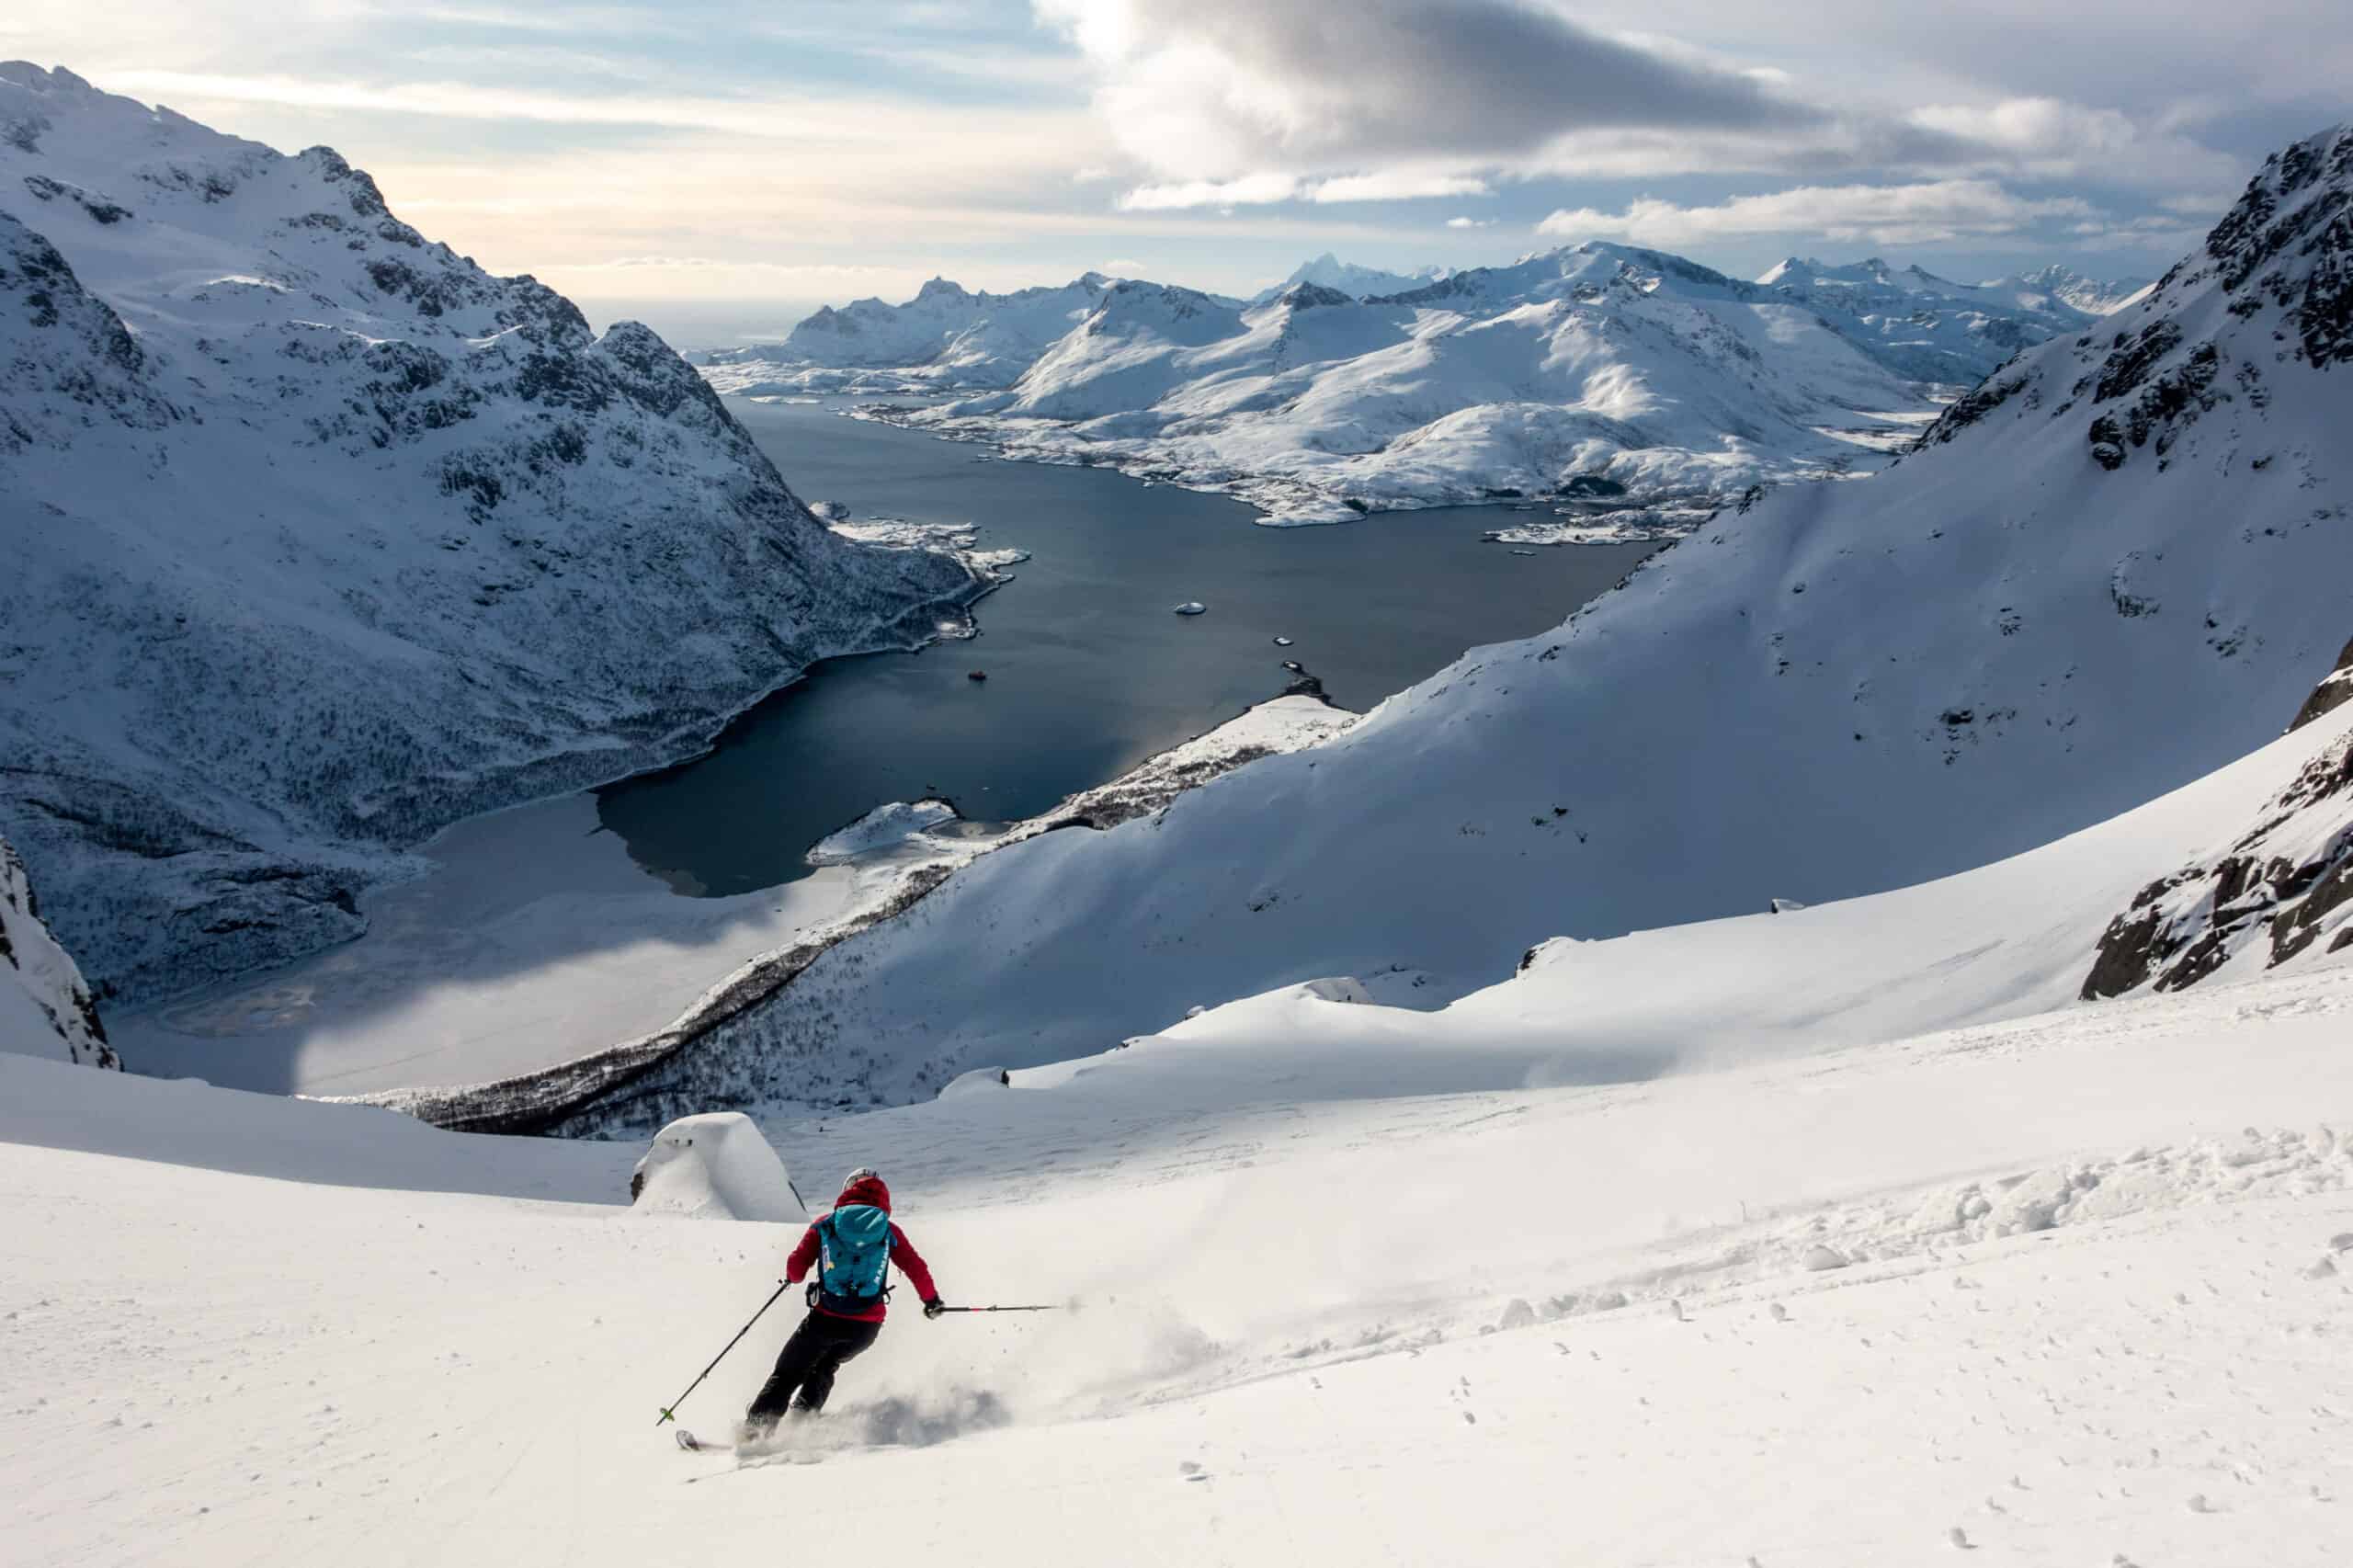 Skiing in the Lofoten Islands in Norway